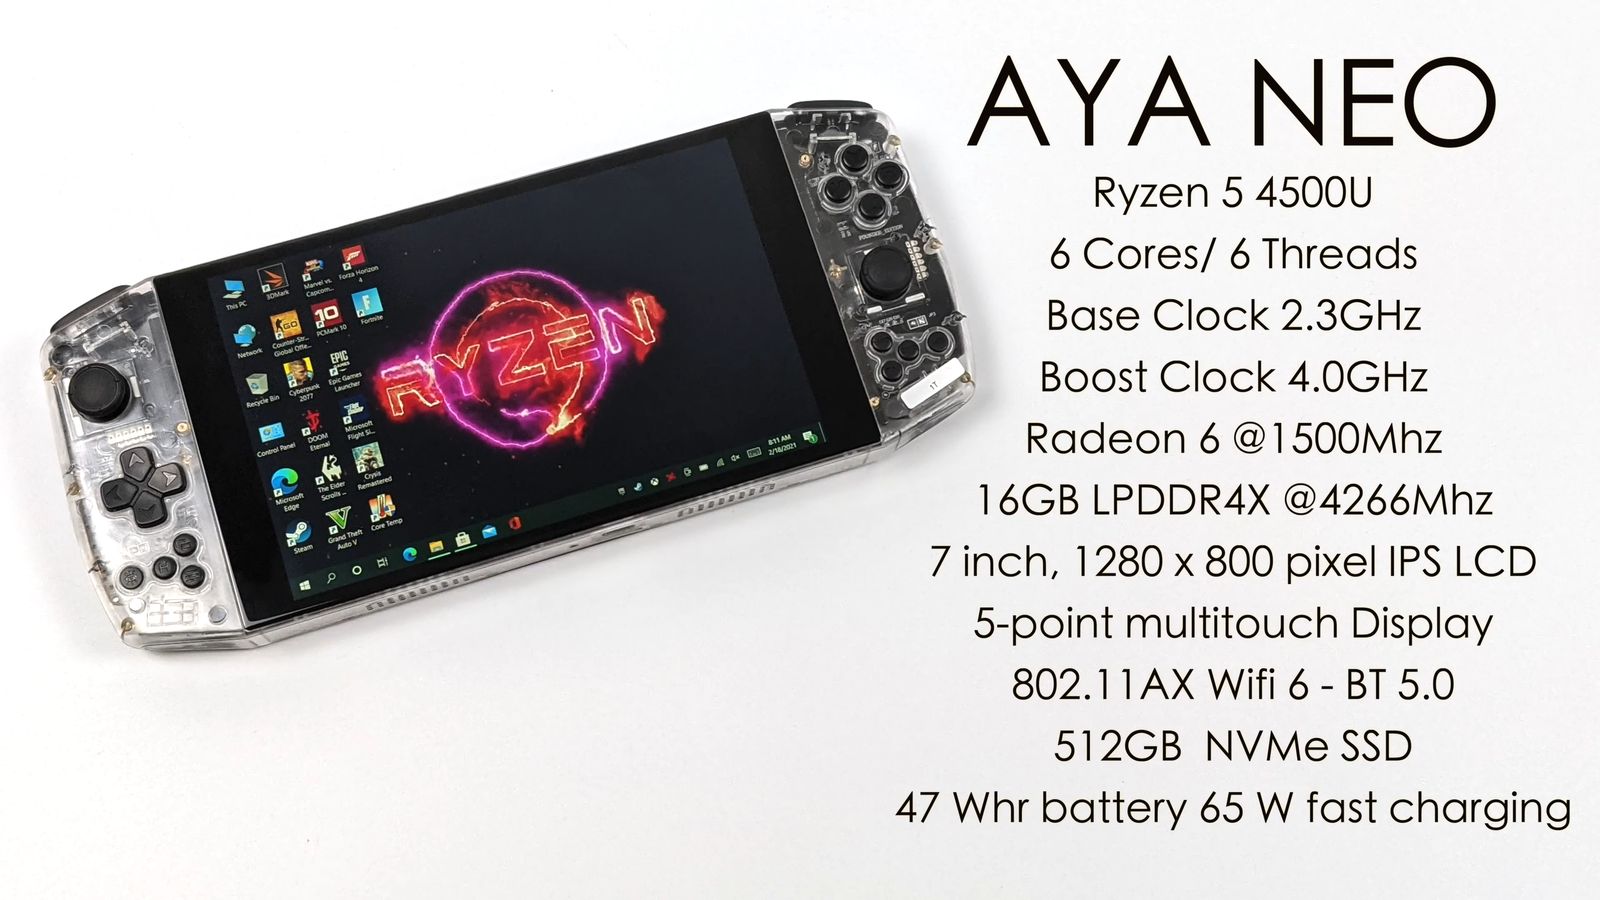 Портативная консоль Aya Neo на базе Ryzen 5 4500U появилась в Китае.